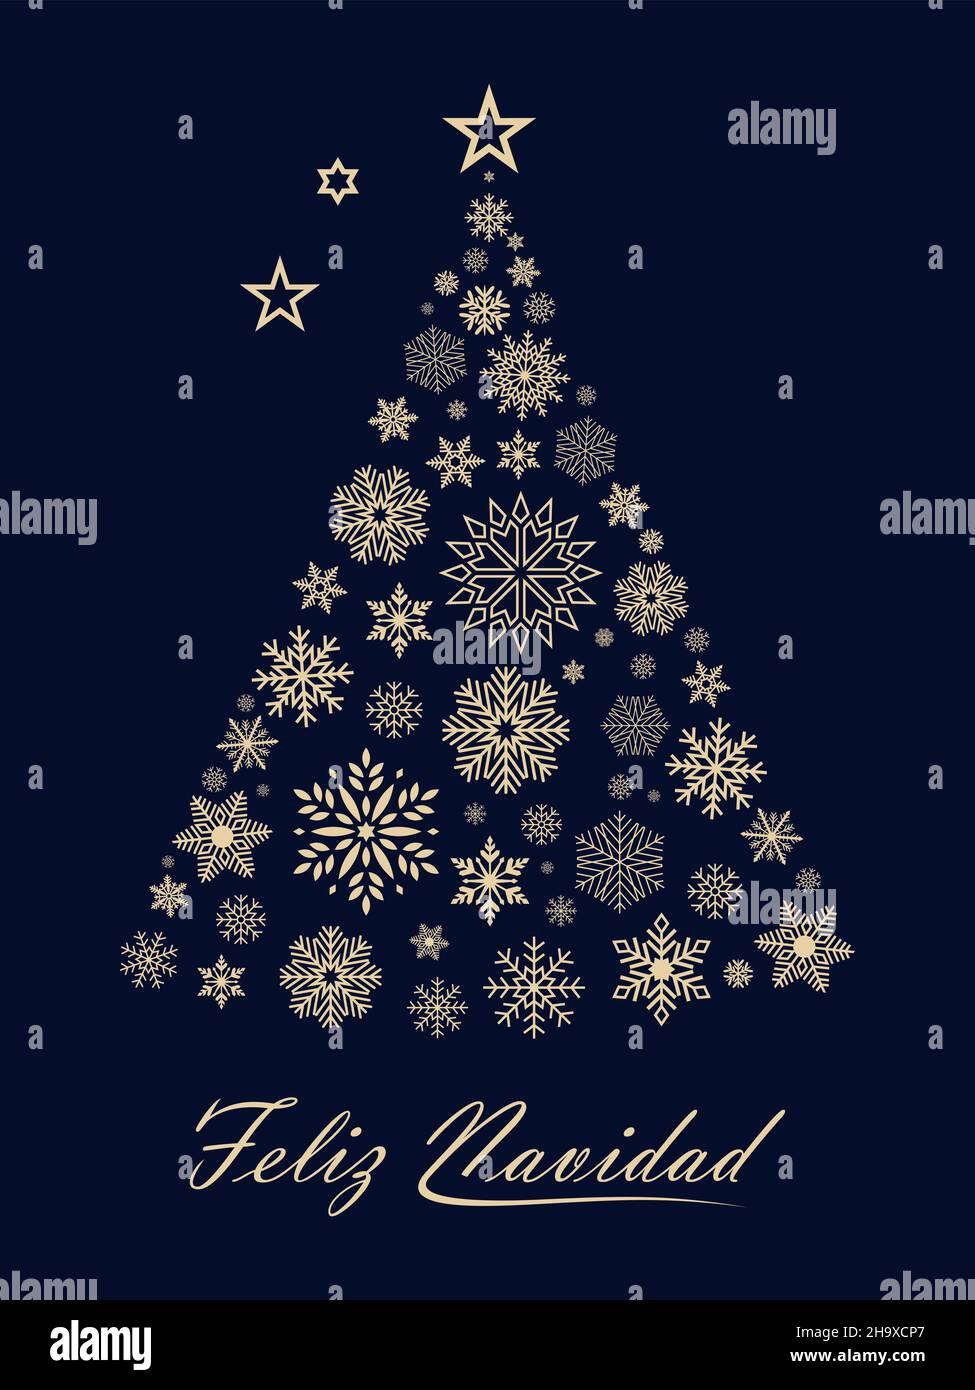 Weihnachtsbaum-Vektor mit Schneeflocken und spanischen weihnachtsgrüßen auf schwarzem Rücken. Übersetzung spanisch ins englische: Feliz Navidad ist Frohe Weihnachten. Stock Vektor